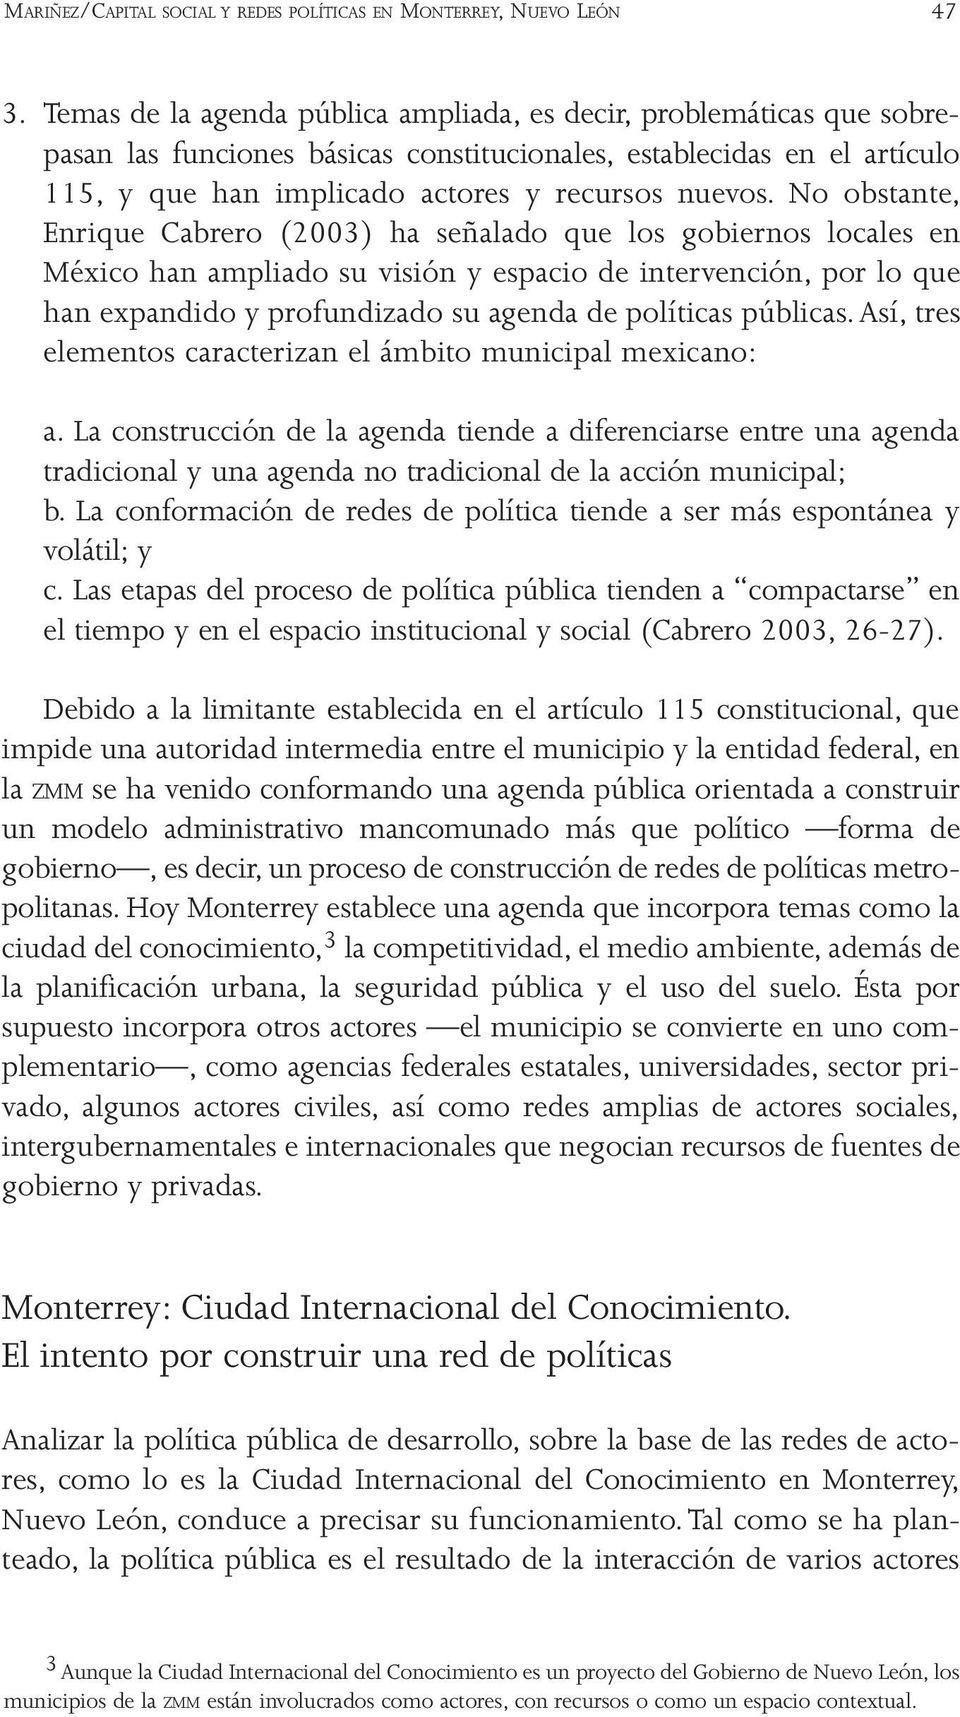 No obstante, Enrique Cabrero (2003) ha señalado que los gobiernos locales en México han ampliado su visión y espacio de intervención, por lo que han expandido y profundizado su agenda de políticas